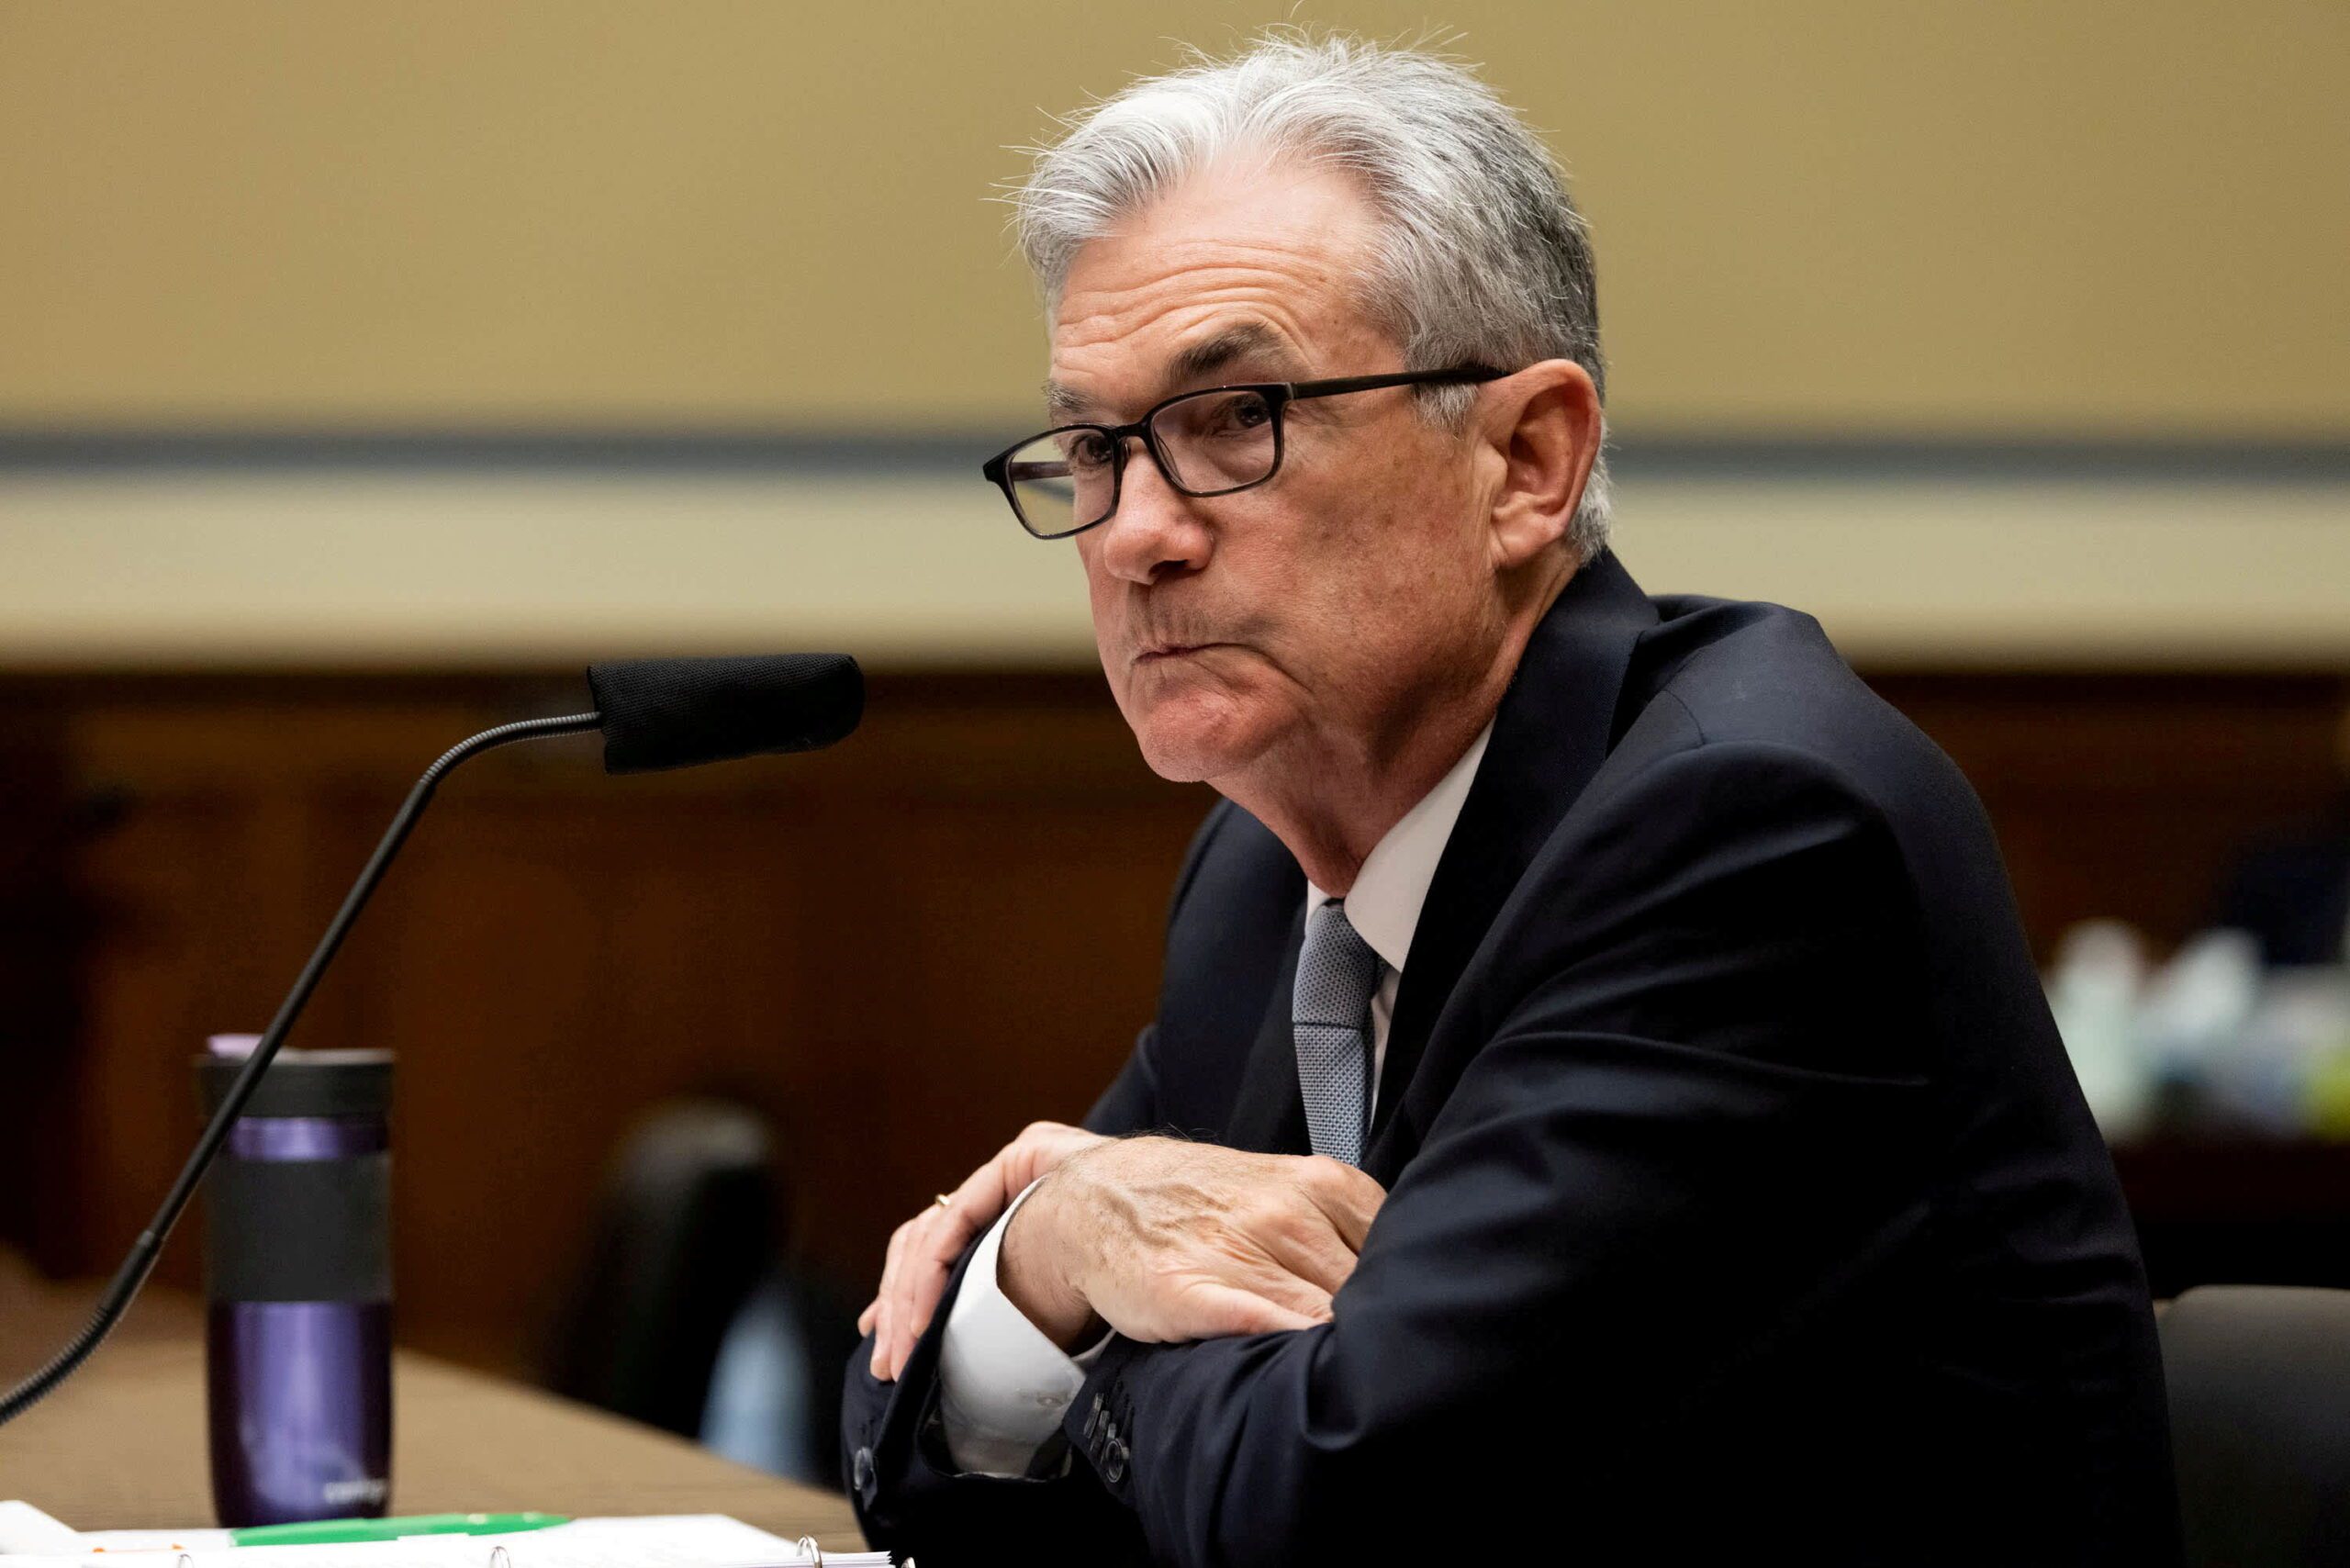 La Fed cambiará las reglas comerciales para que los funcionarios mantengan la confianza del público después de la controversia, dice Powell.